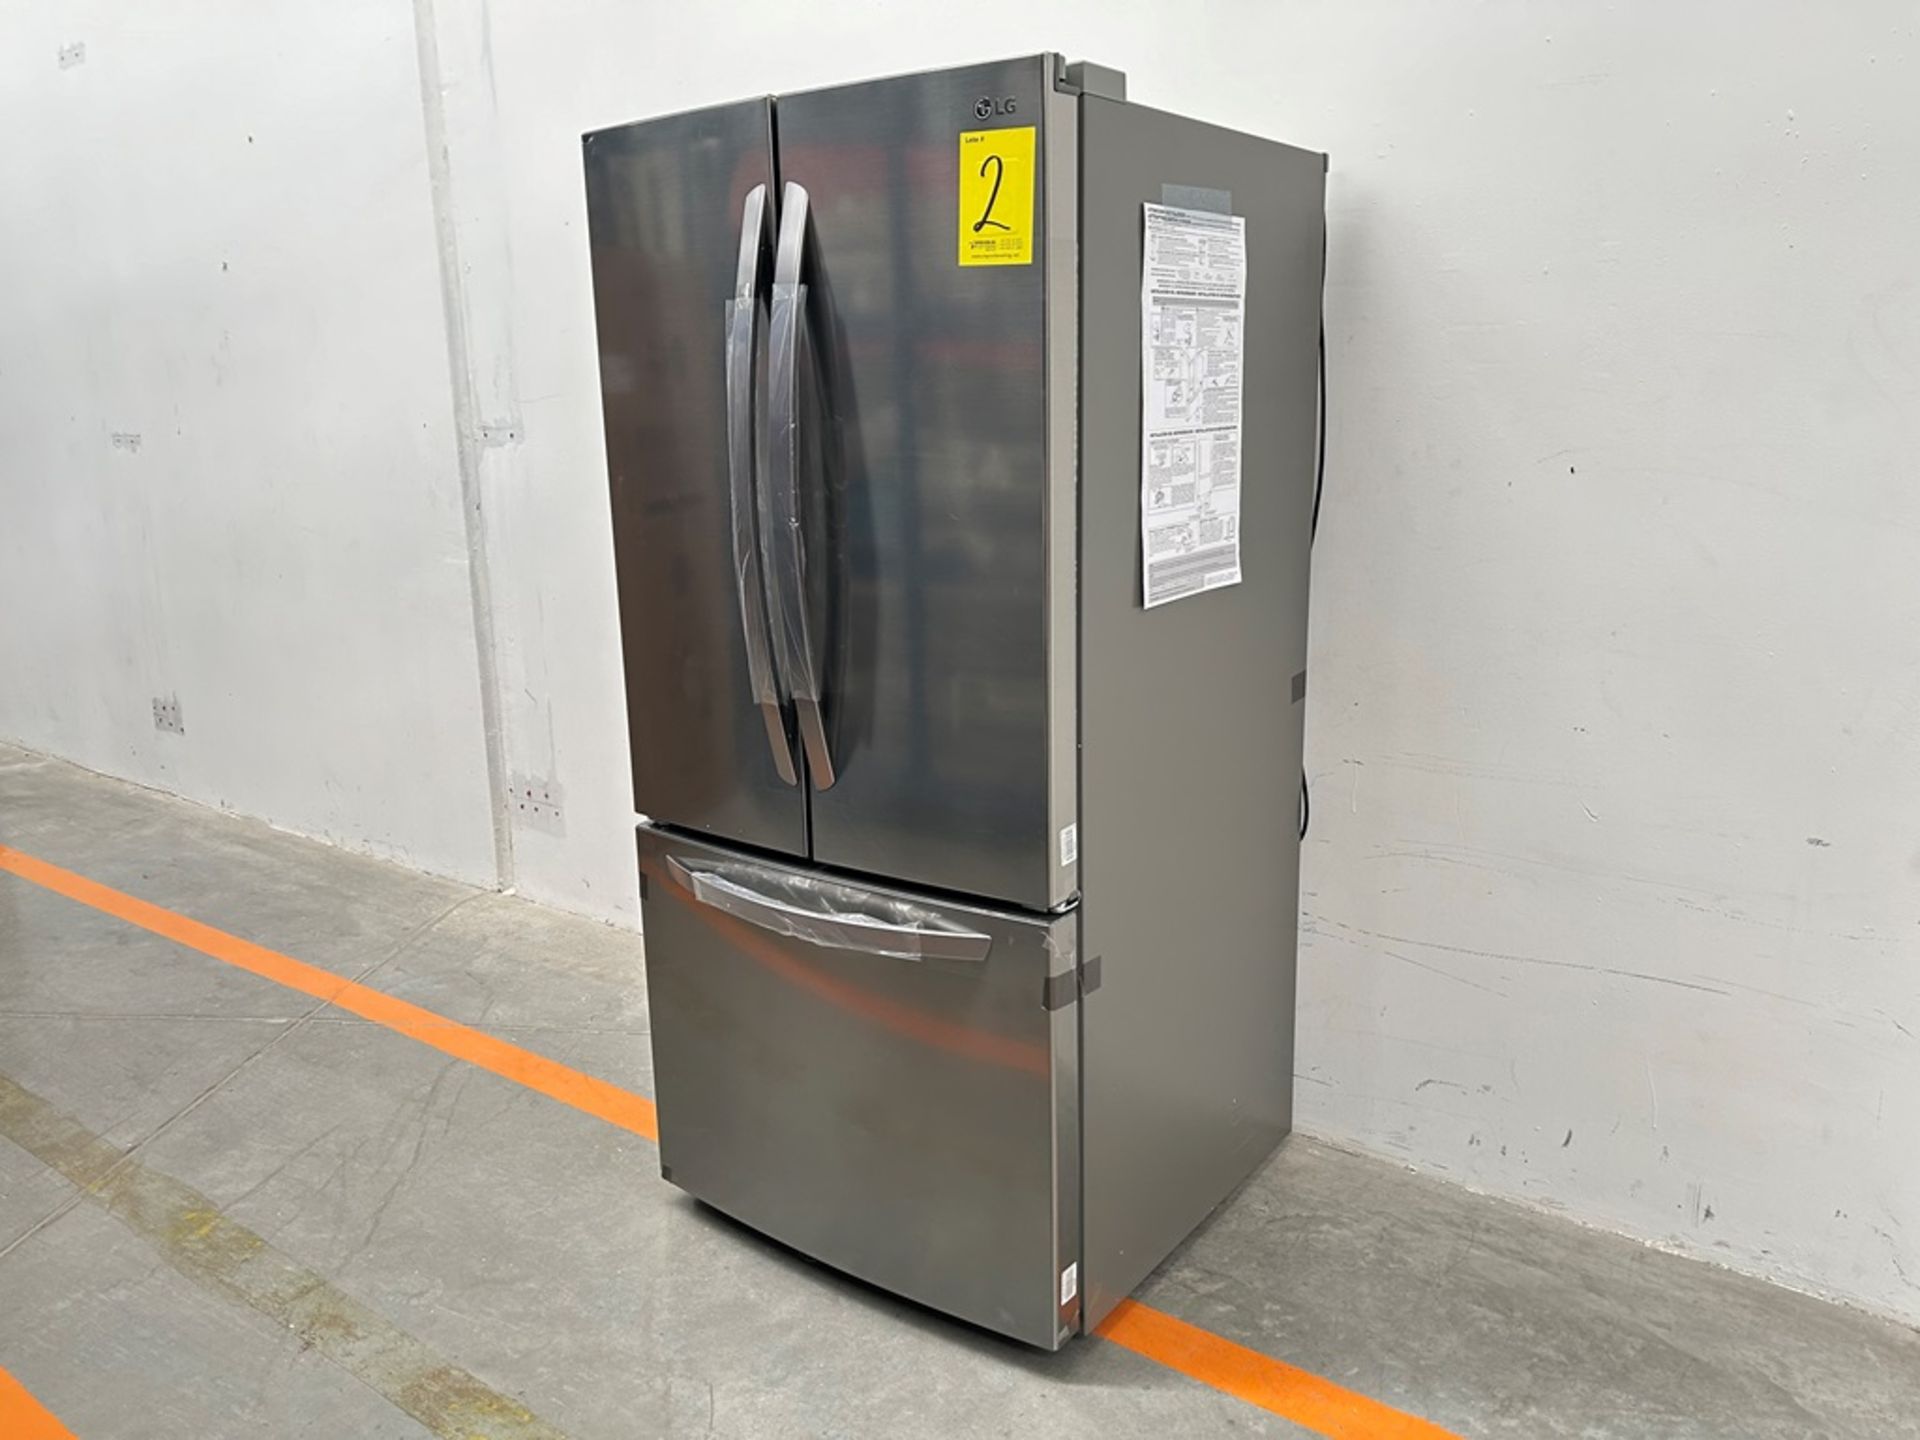 (NUEVO) Refrigerador Marca LG, Modelo GM65BGSK, Serie Z30098, Color GRIS - Image 2 of 11